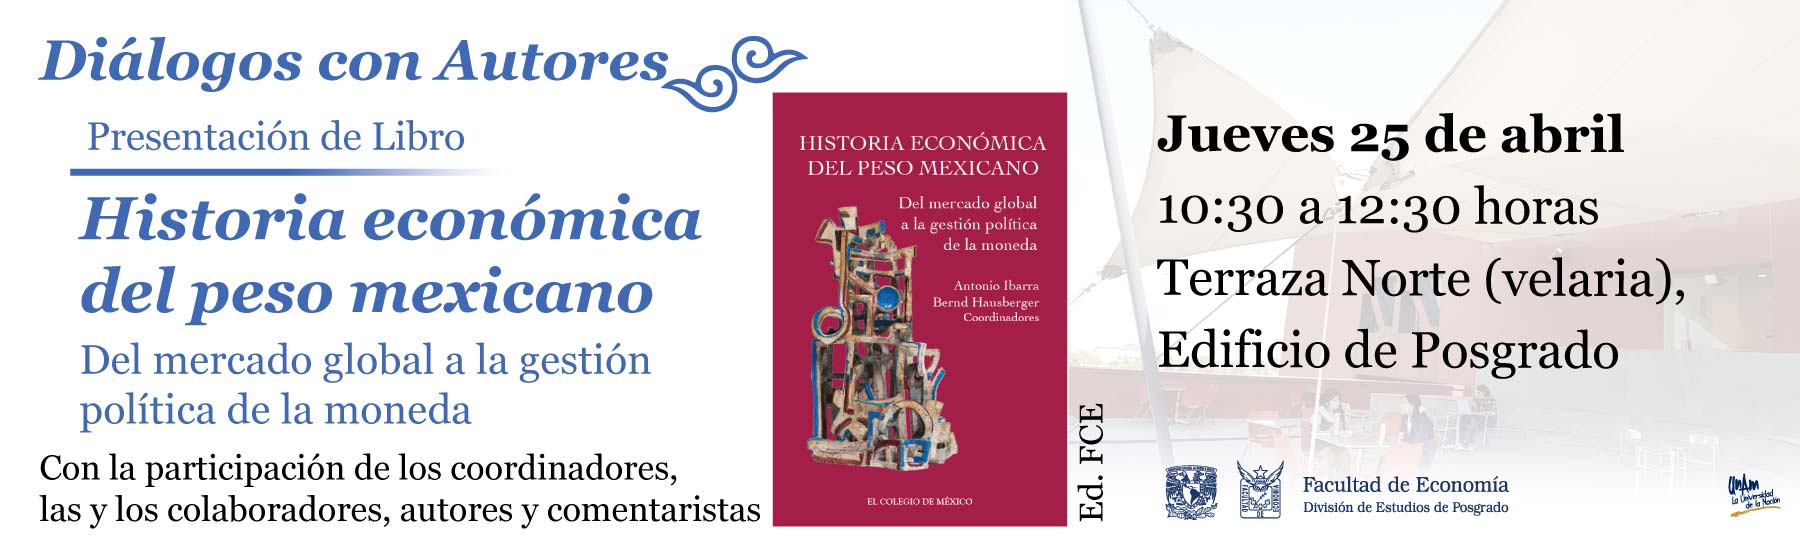 Presentación de Libro.  Historia económica del peso mexicano. Del mercado global a la gestión política de la moneda.25 de abril, 10:30 a 12:30 horas